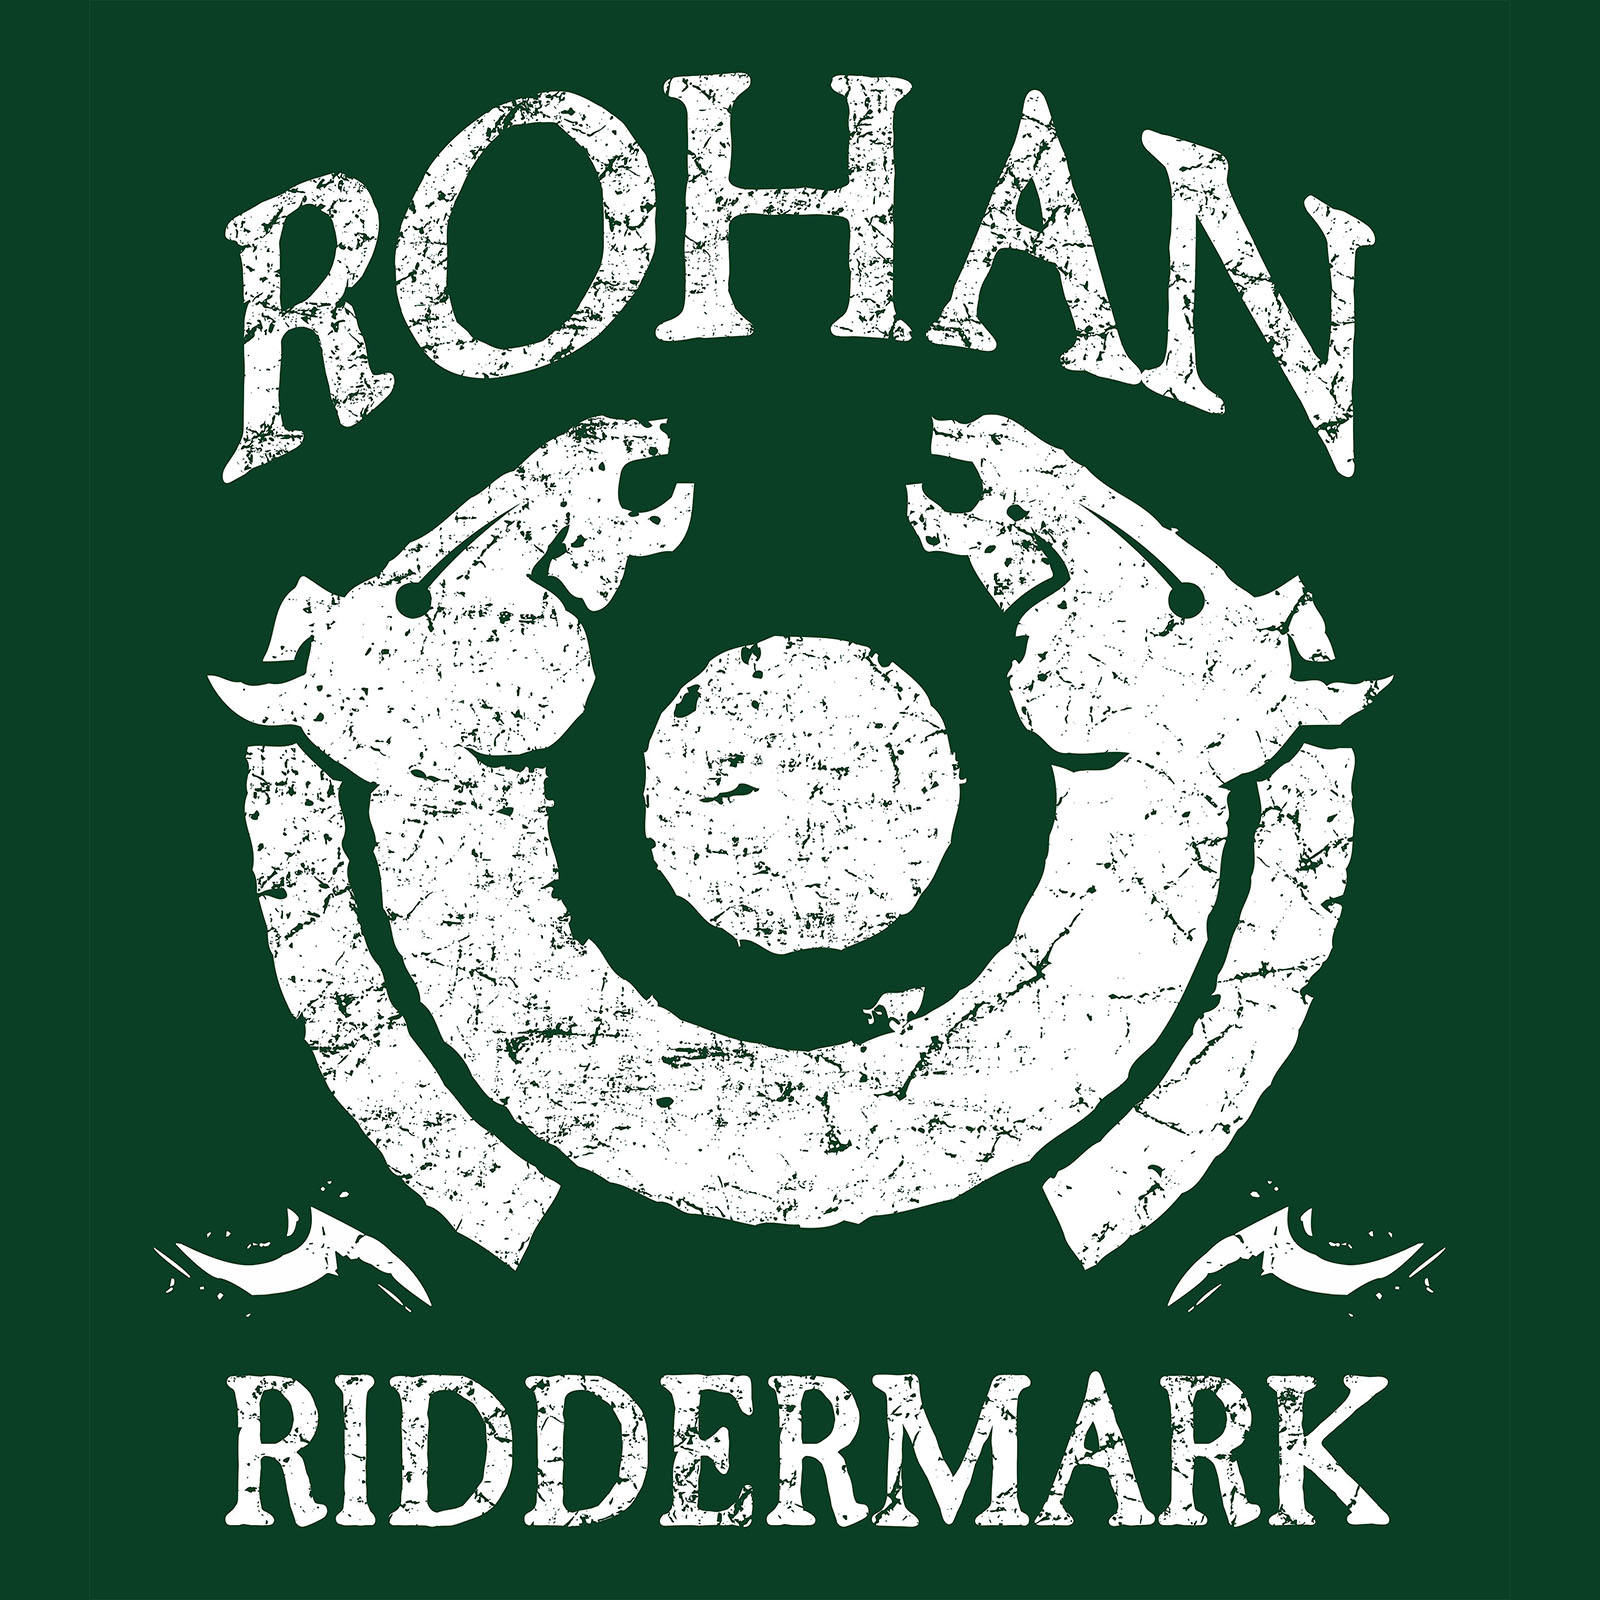 Herr der Ringe - Rohan T-Shirt grün